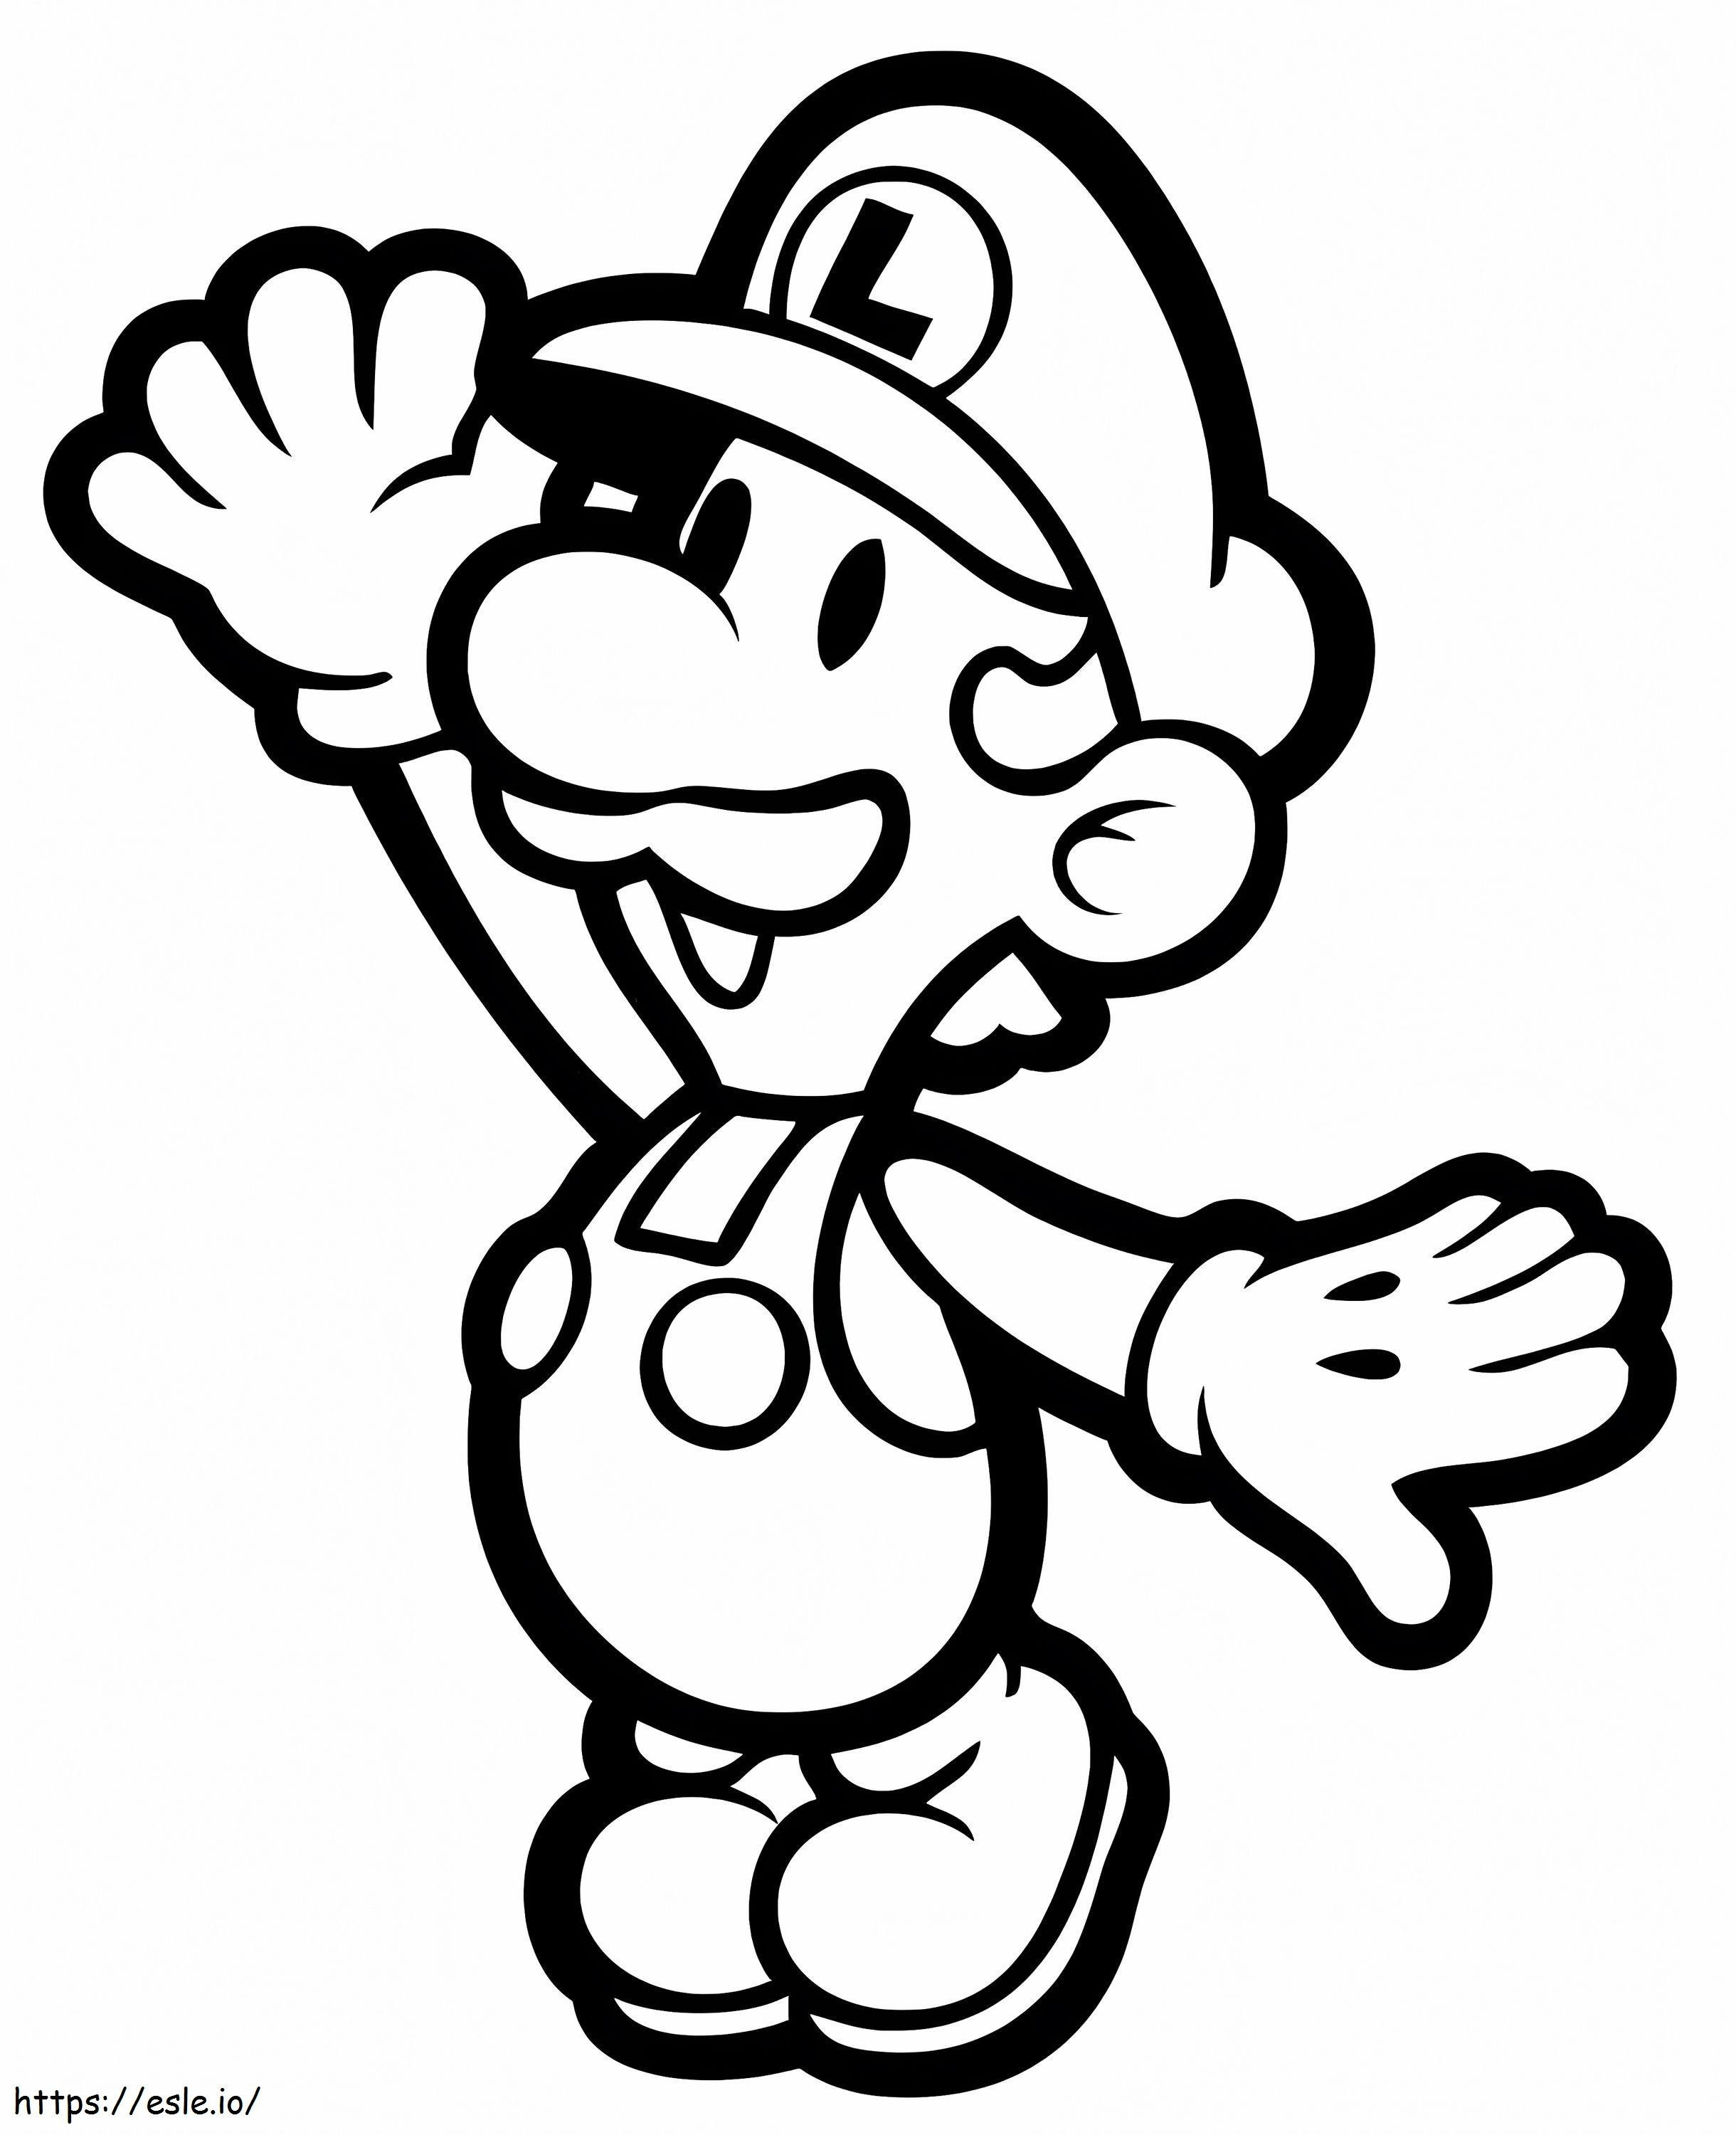 Louis De Super Mario coloring page